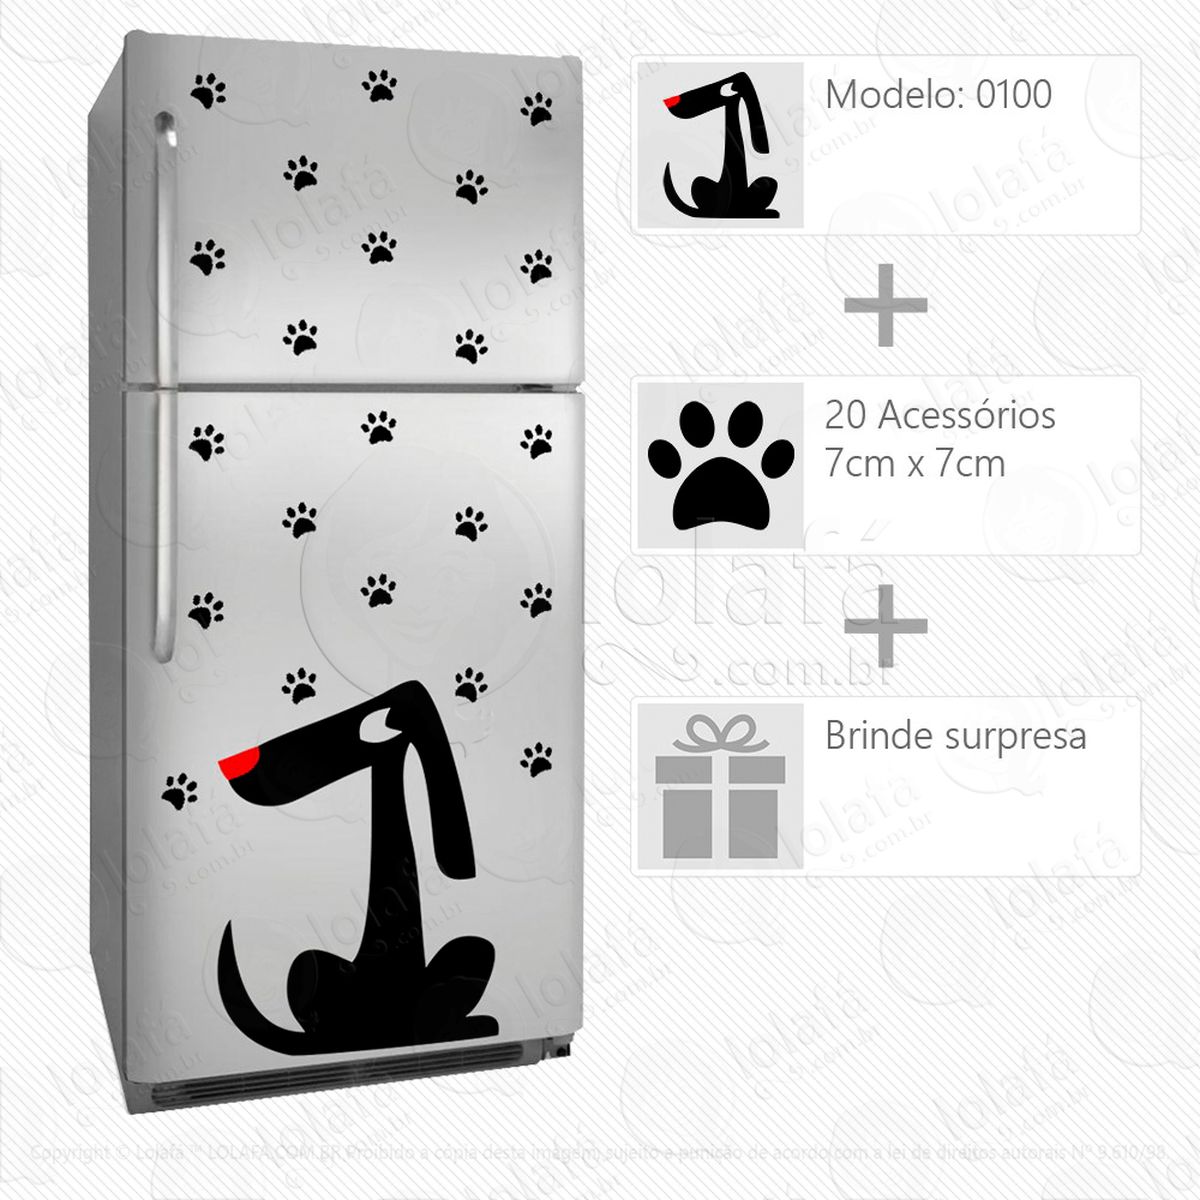 cachorro adesivo para geladeira e frigobar - mod:100